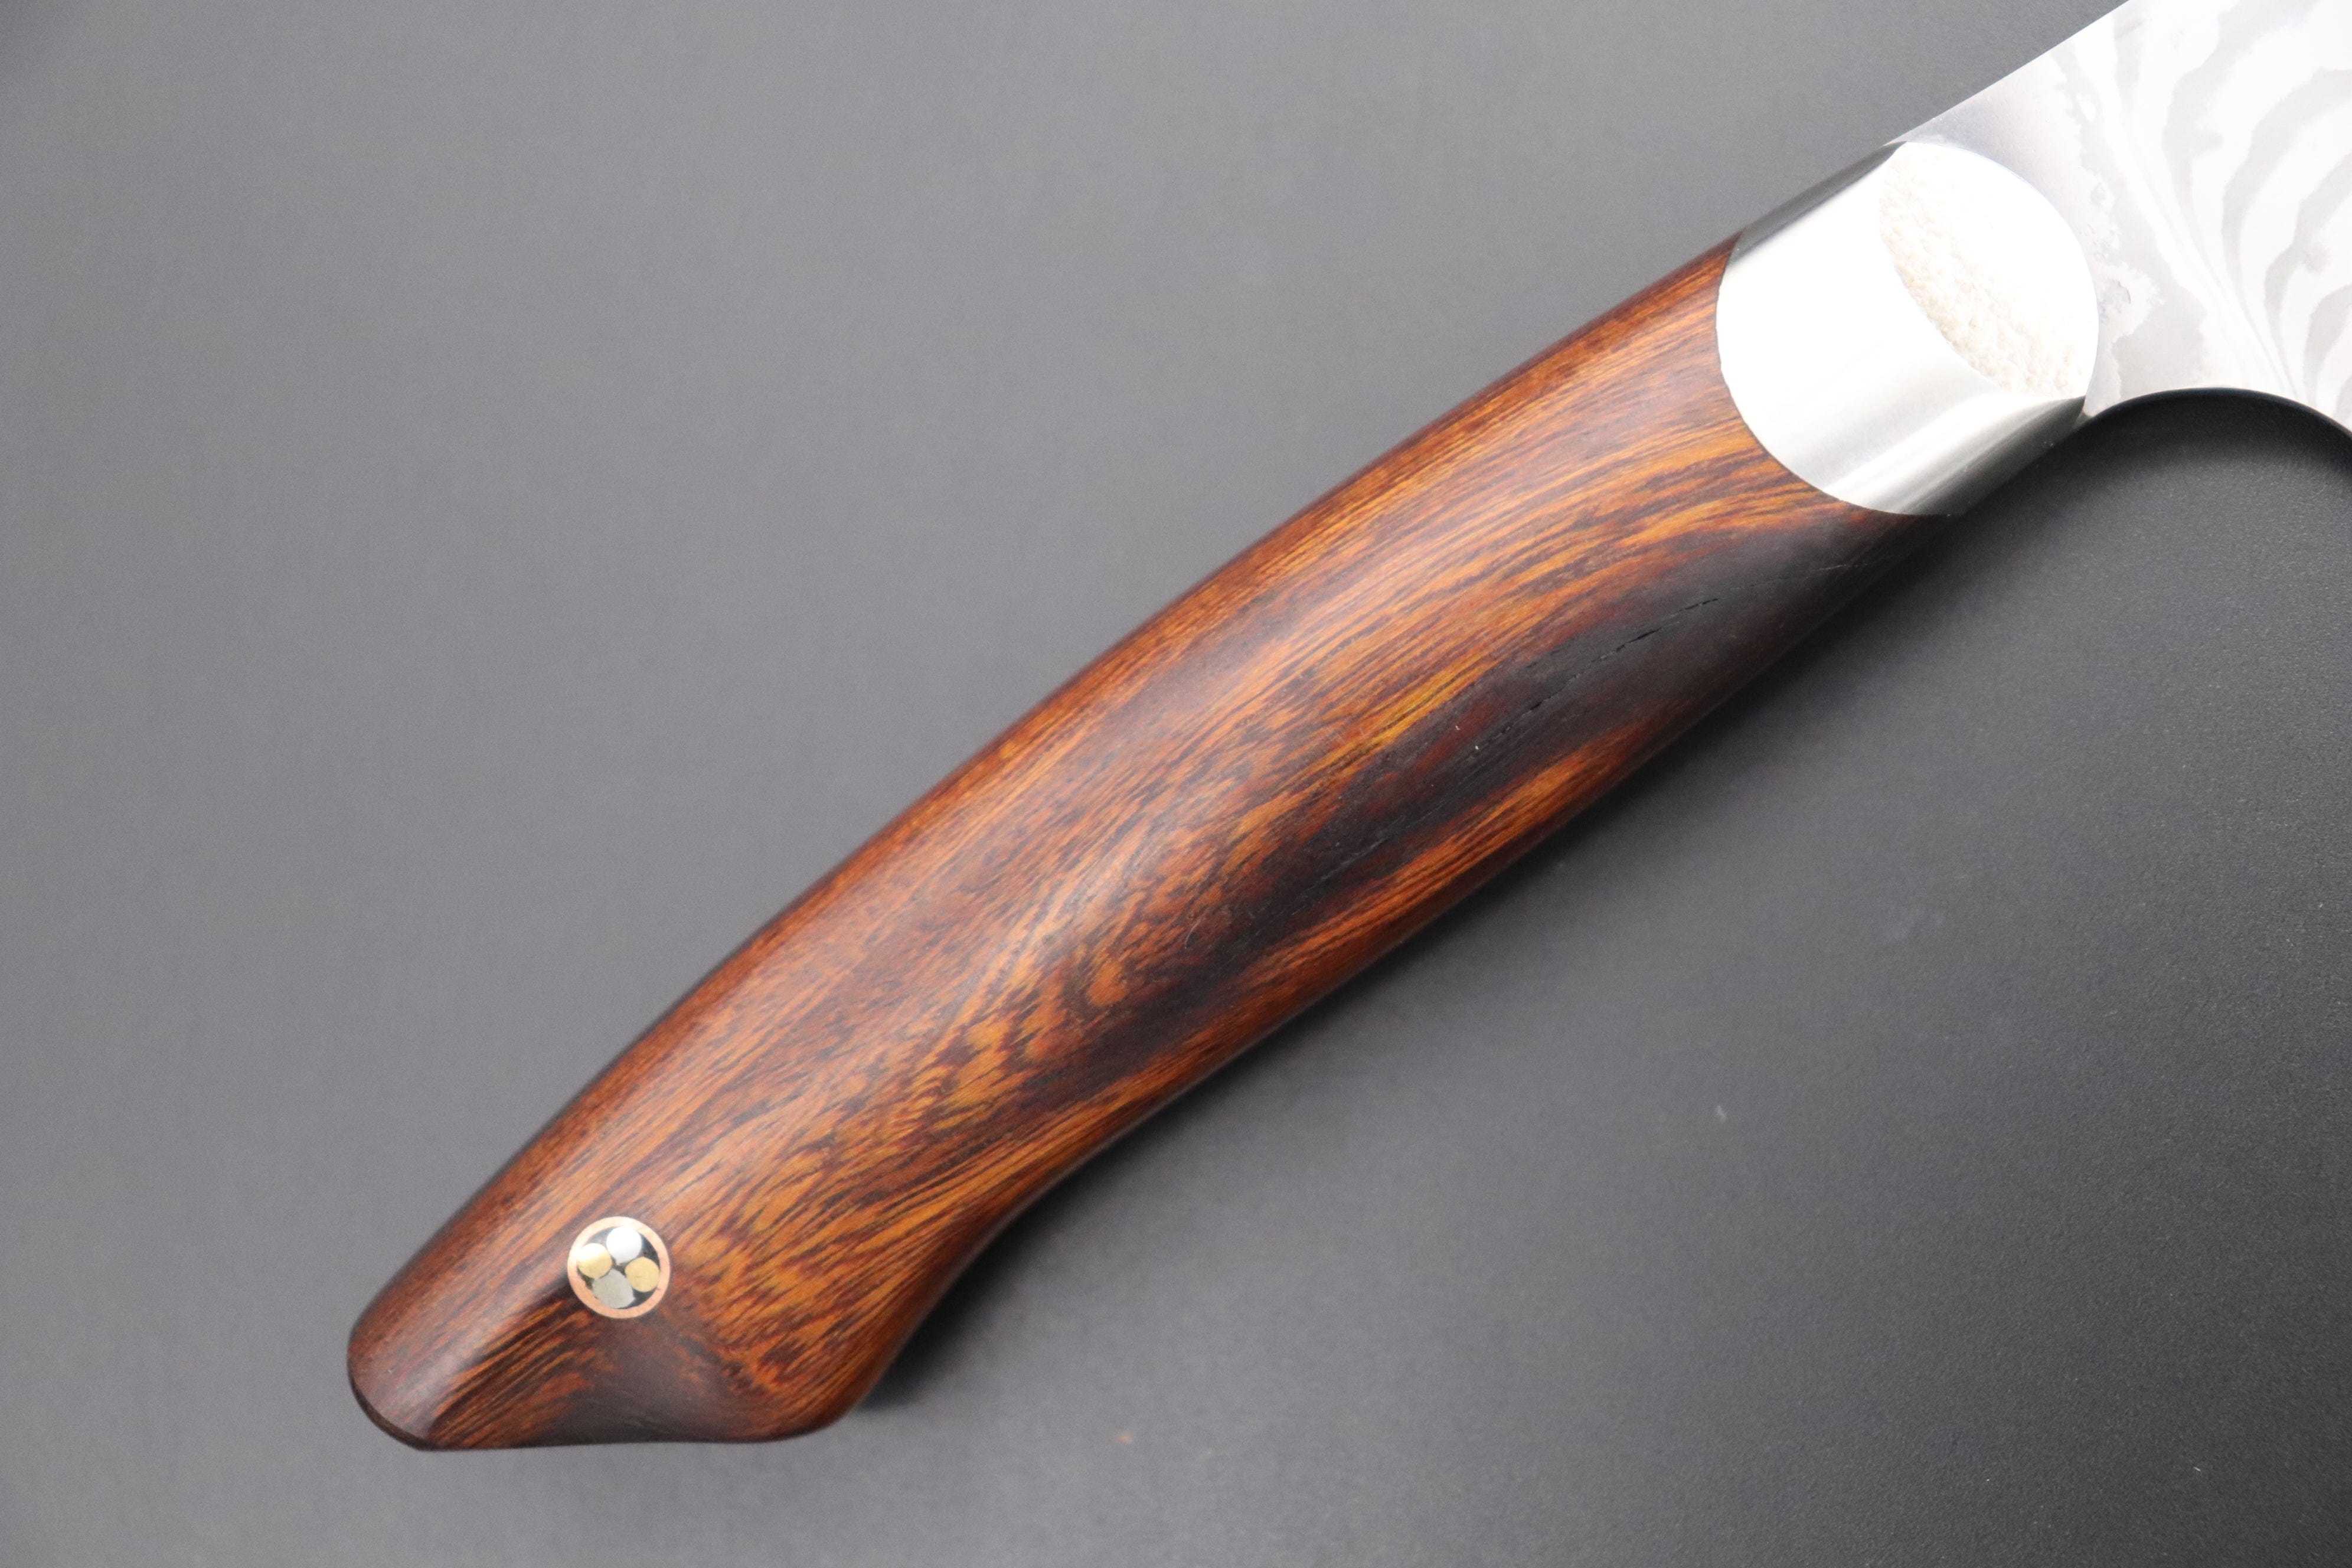 https://japanesechefsknife.com/cdn/shop/files/others-gyuto-custom-knife-maker-saito-hiroshi-custom-core-less-damascus-gyuto-190mm-7-4-inch-desert-ironwood-handle-sh-6-43309846987035.jpg?v=1698296441